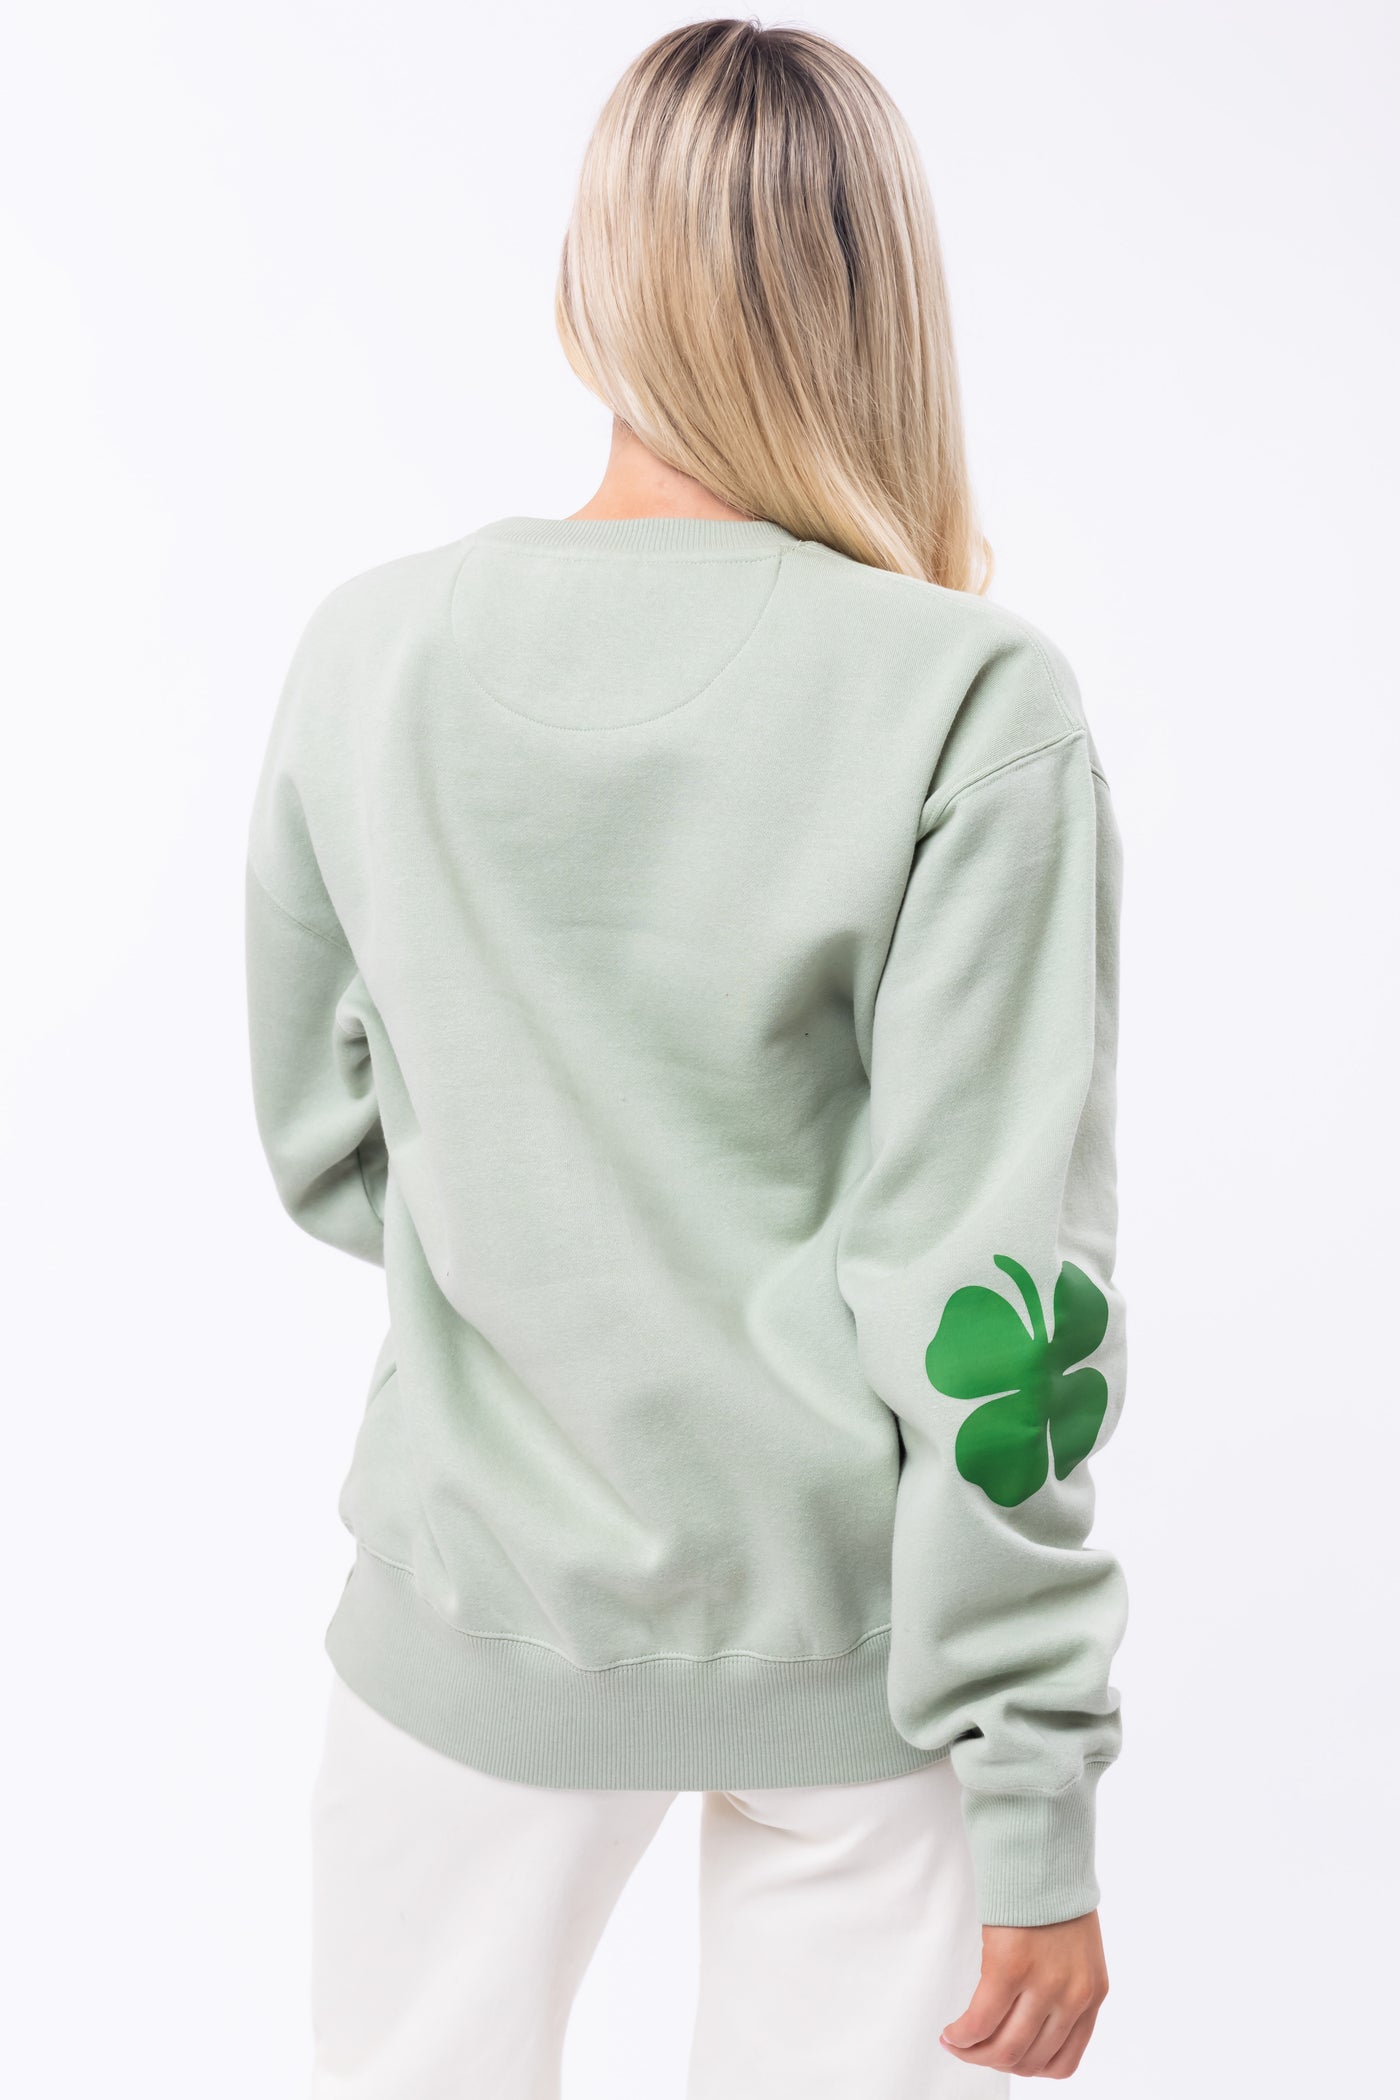 Sage 'Irish' Clover Elbow Patch Sweatshirt